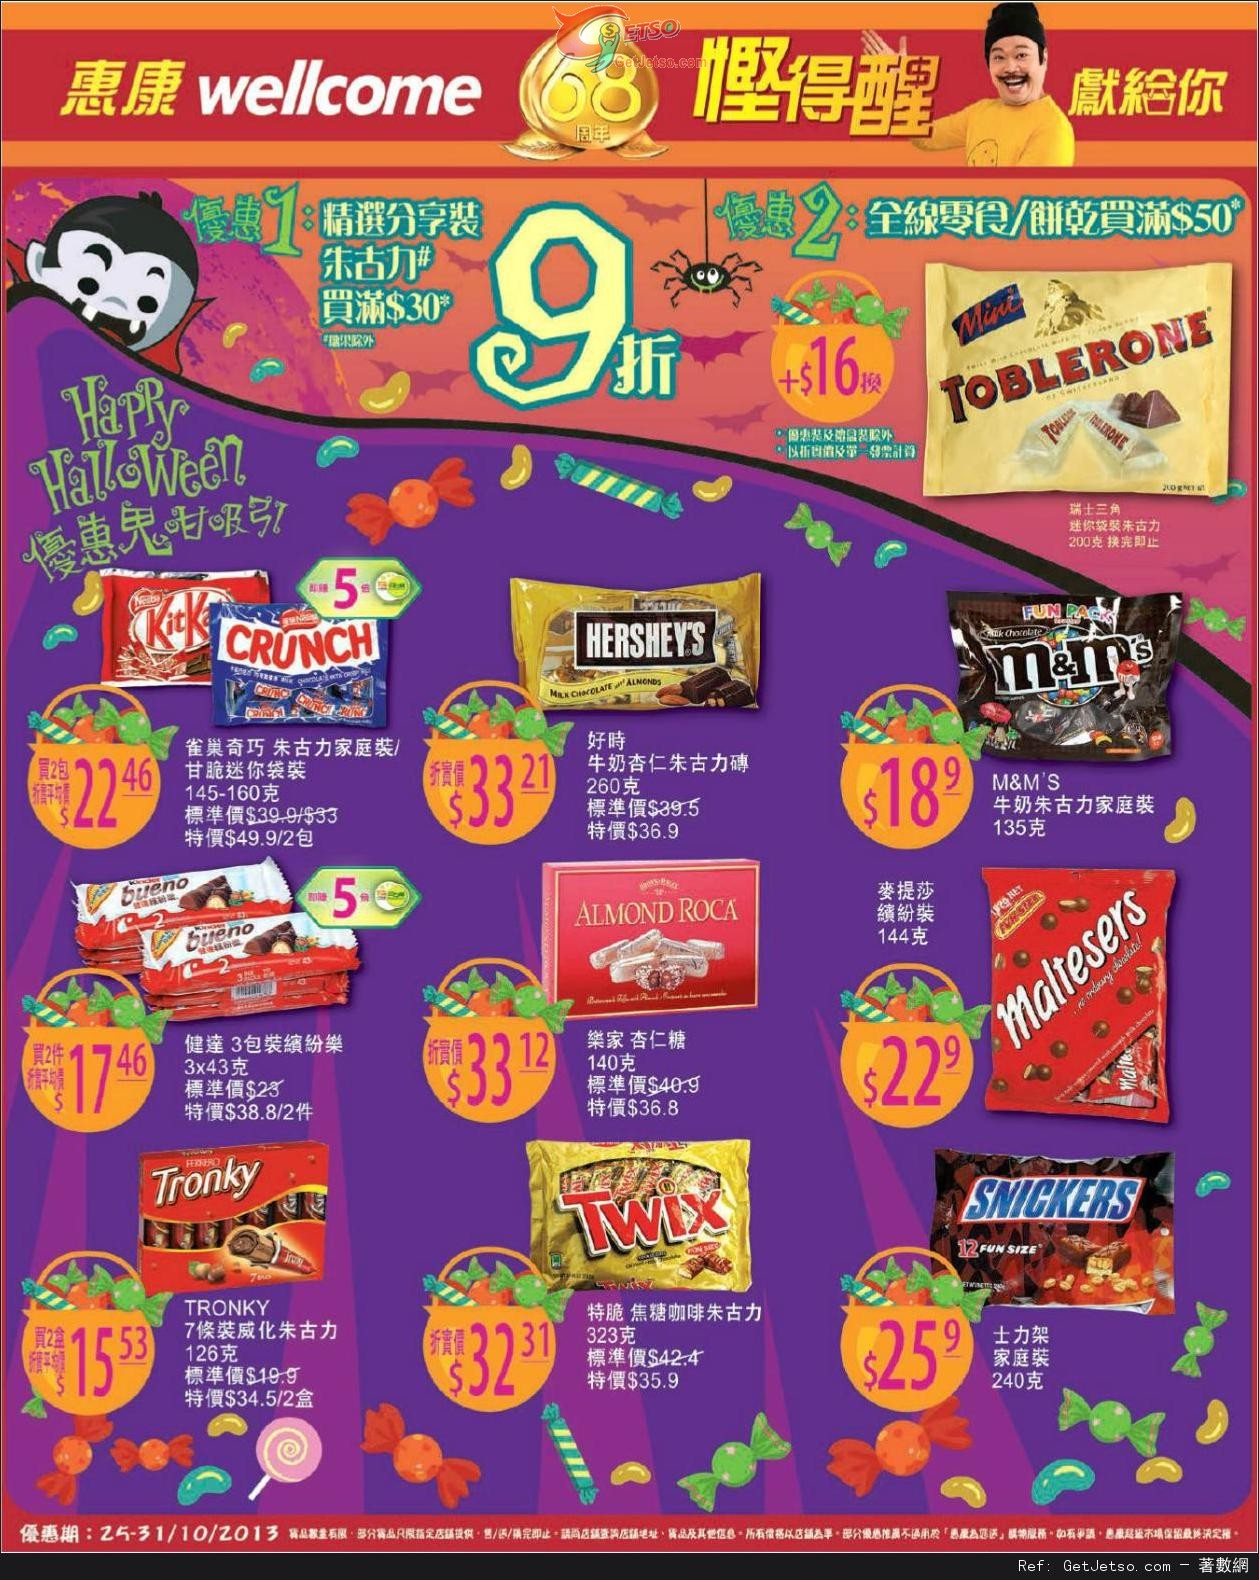 惠康超級市場全線朱古力/餅乾及零食購買優惠(至13年10月31日)圖片1